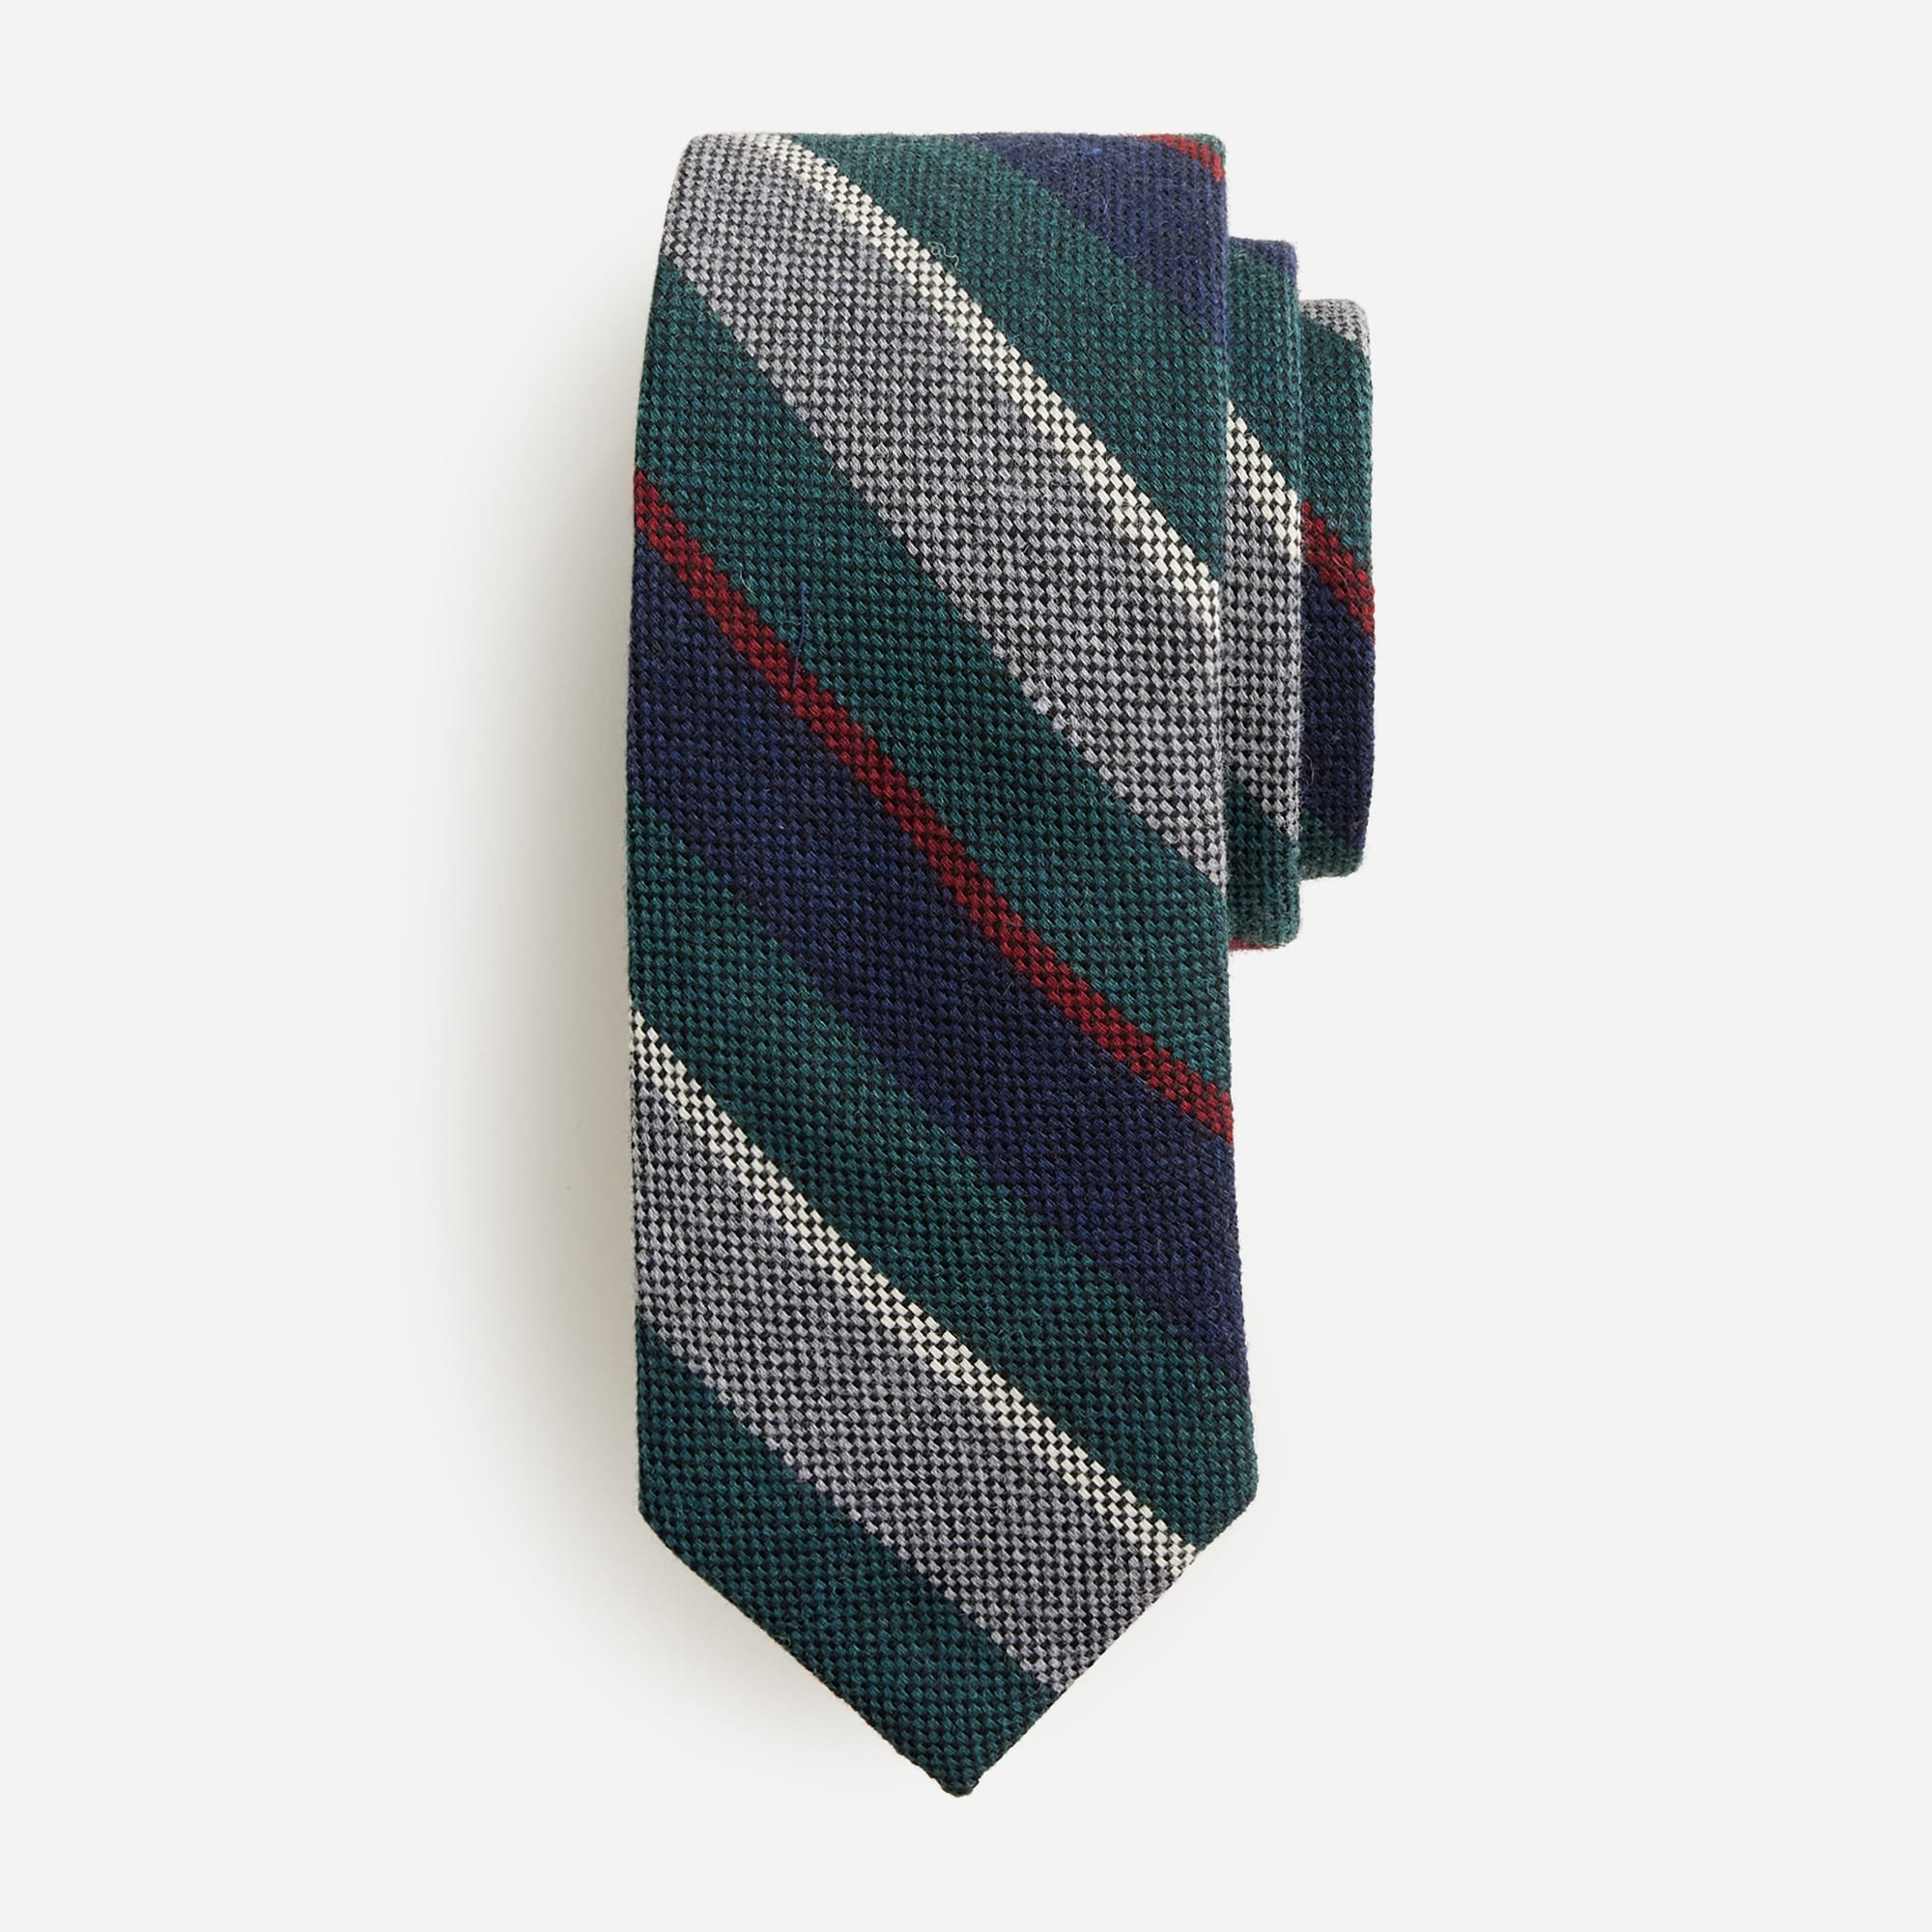 Jcrew Italian wool striped tie